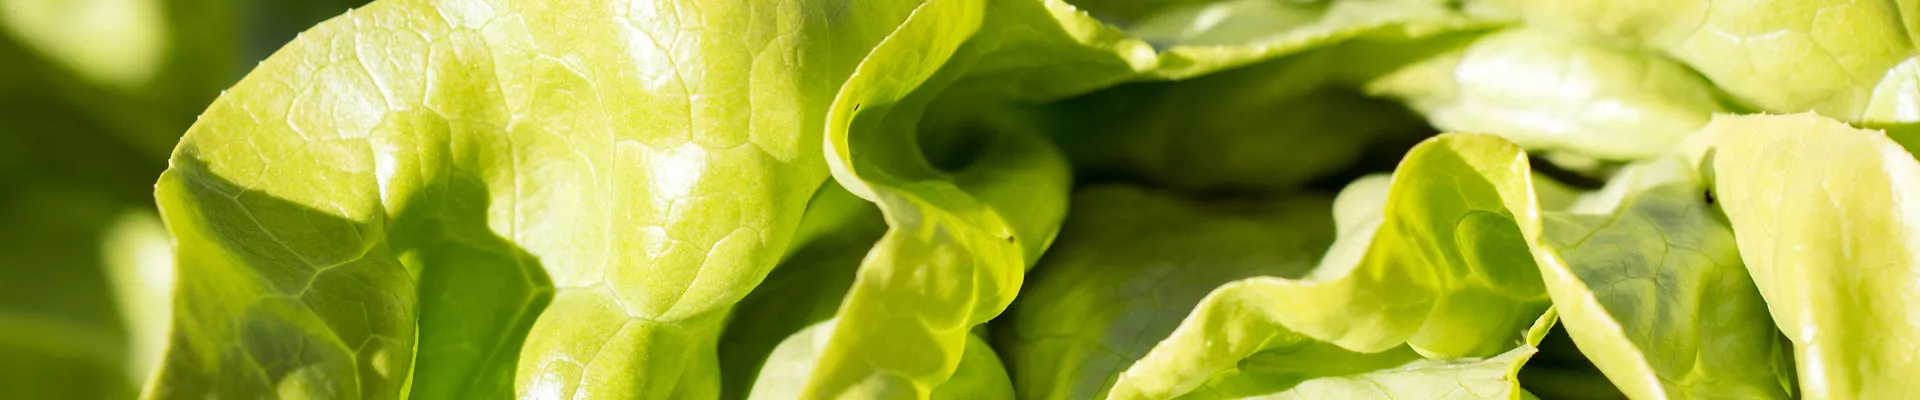 Grow it yourself: Lettuce